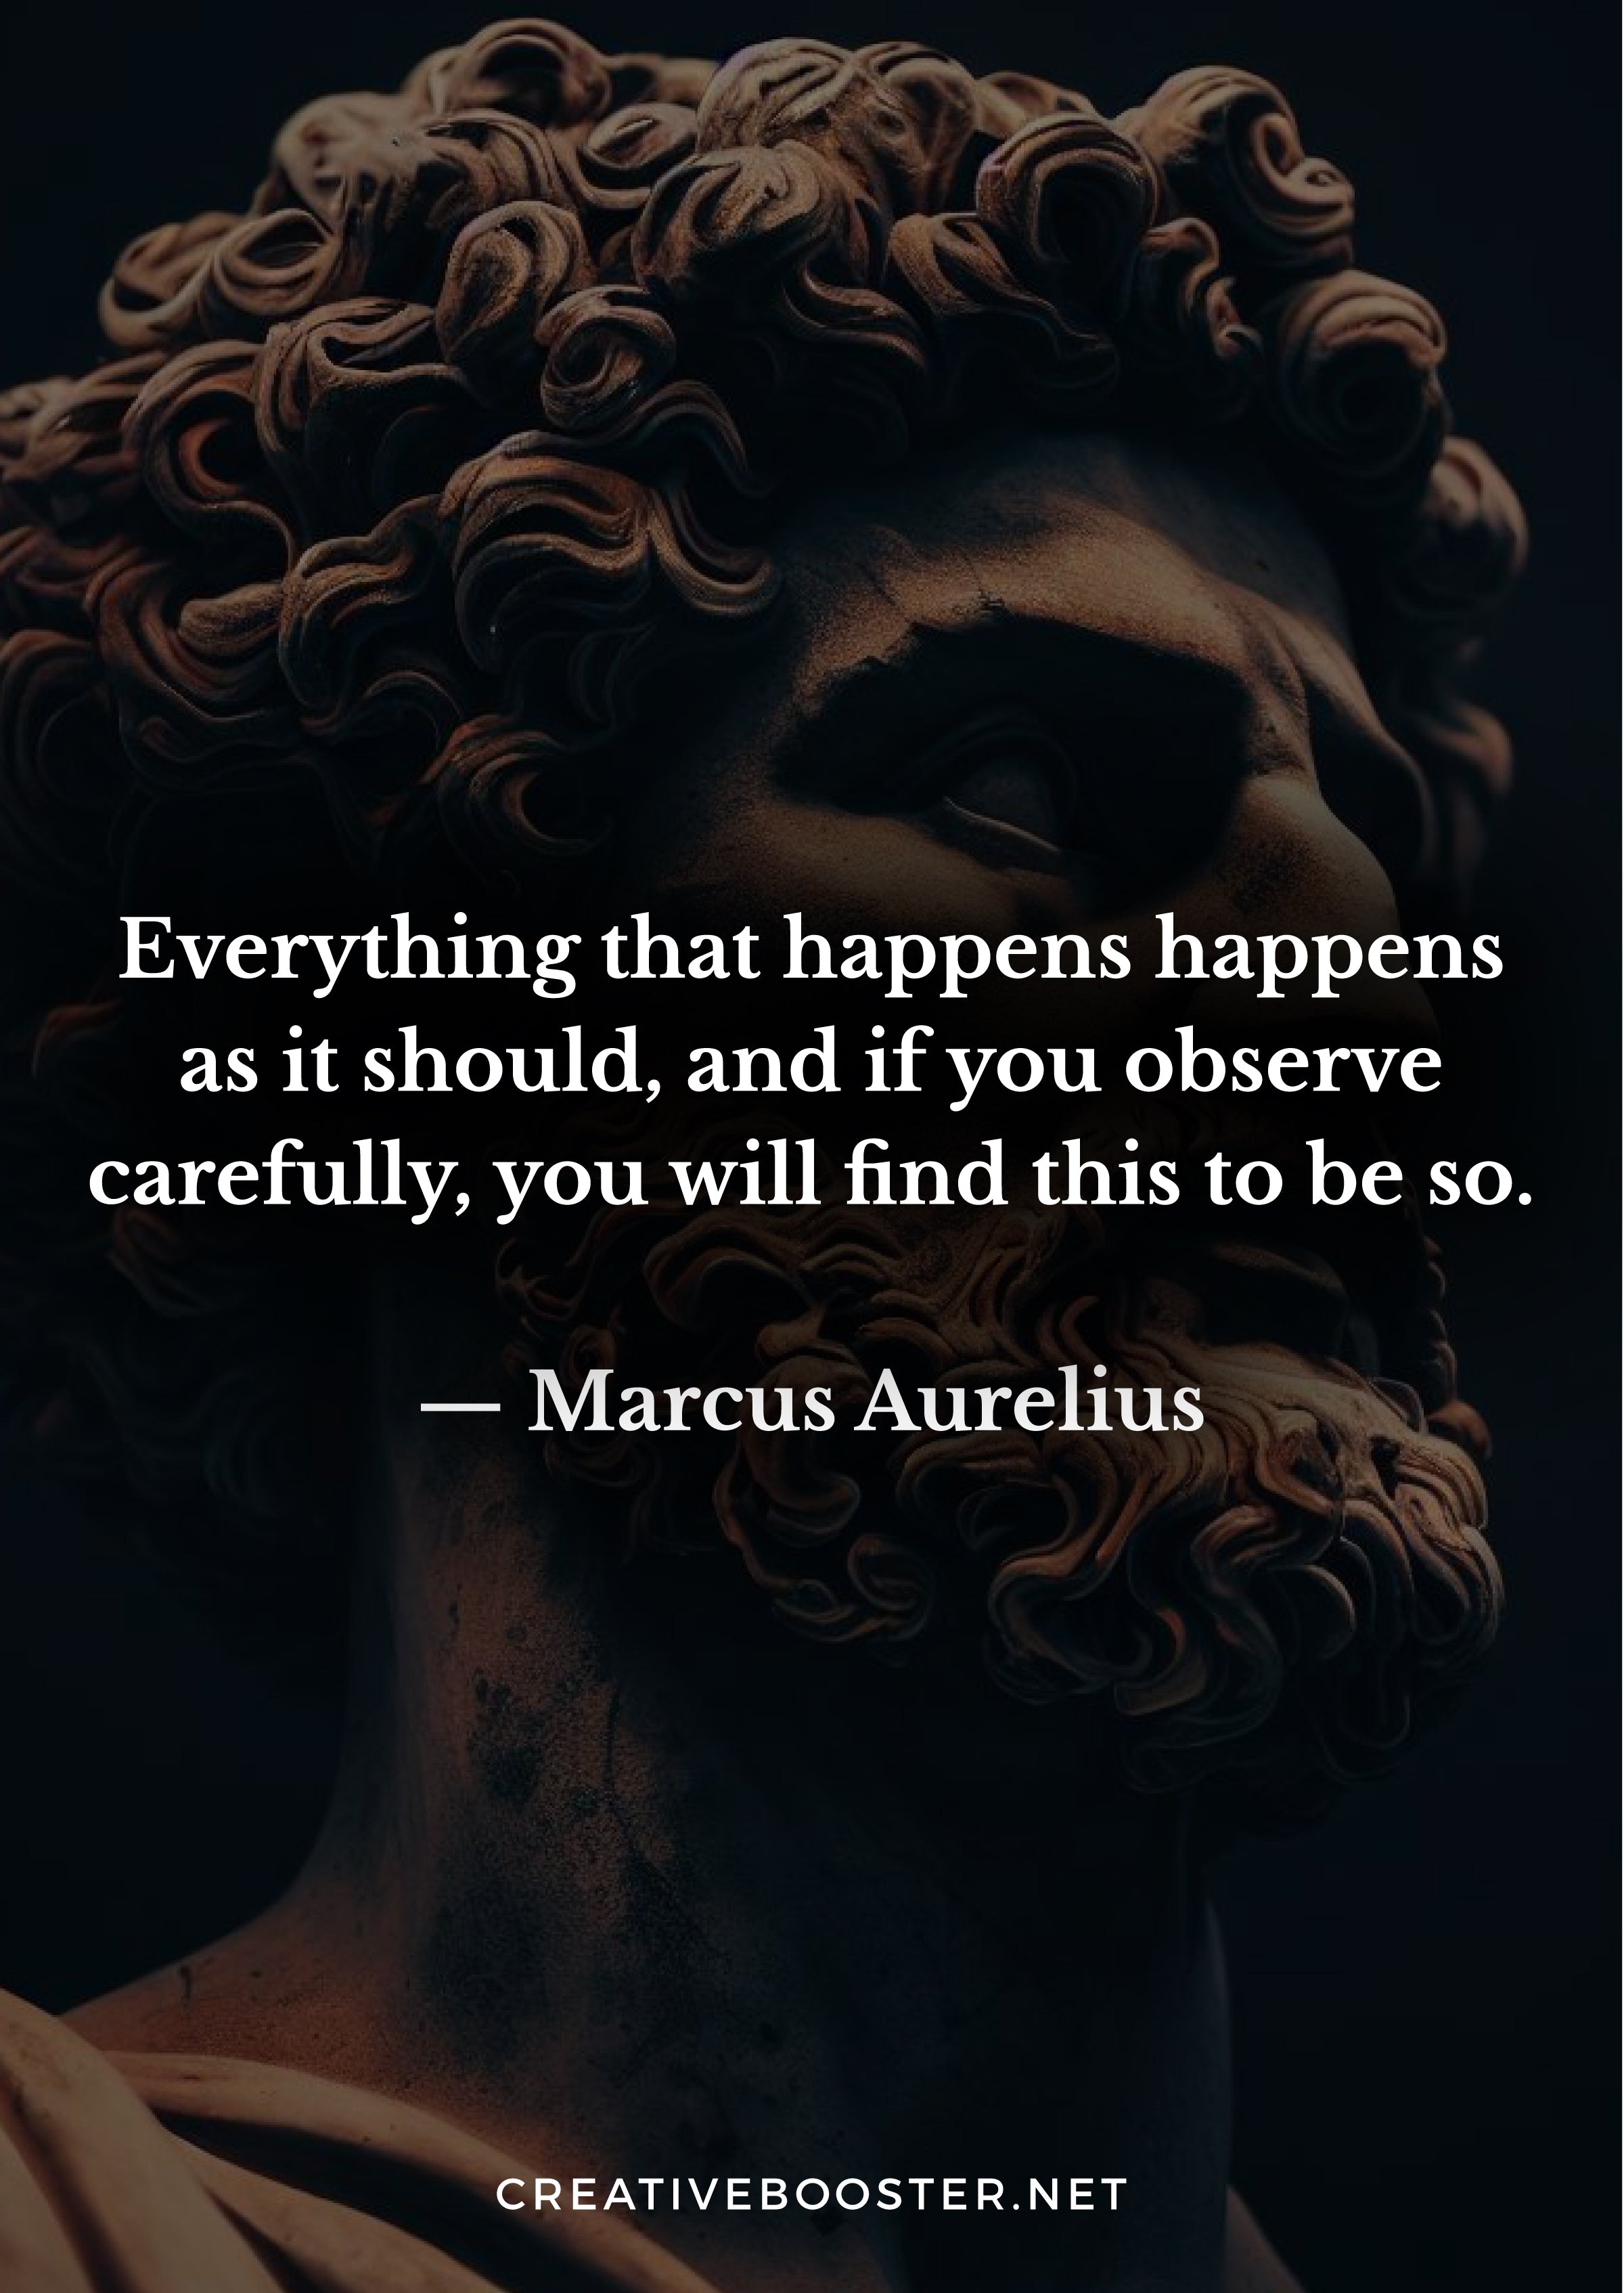 Marcus-Aurelius-Quotes-On-Life